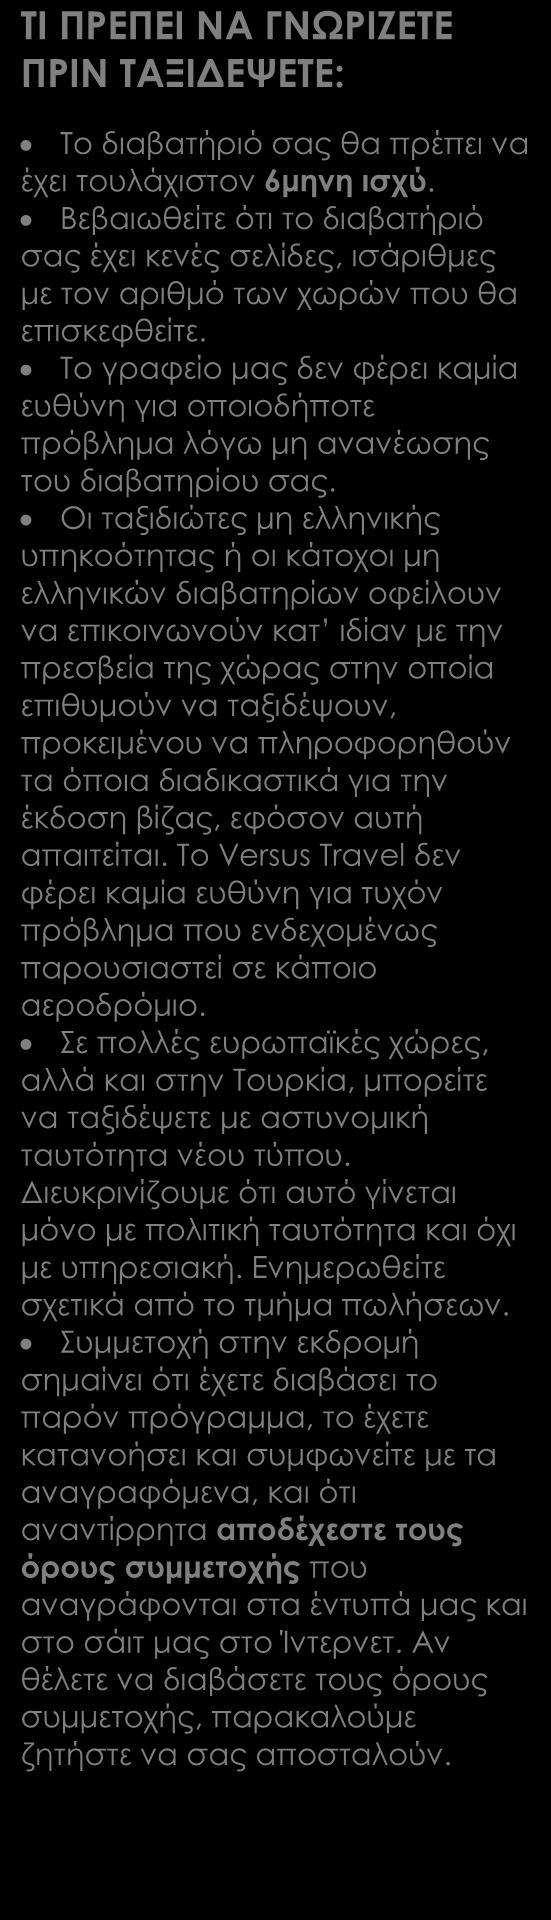 Όλες οι μετακινήσεις, ξεναγήσεις, εκδρομές σύμφωνα με το αναλυτικό πρόγραμμα Έλληνας αρχηγός Διπλωματούχοι τοπικοί ξεναγοί (επιπλέον του Έλληνα αρχηγού) όπου κρίνουμε σκόπιμο ότι χρειάζεται.